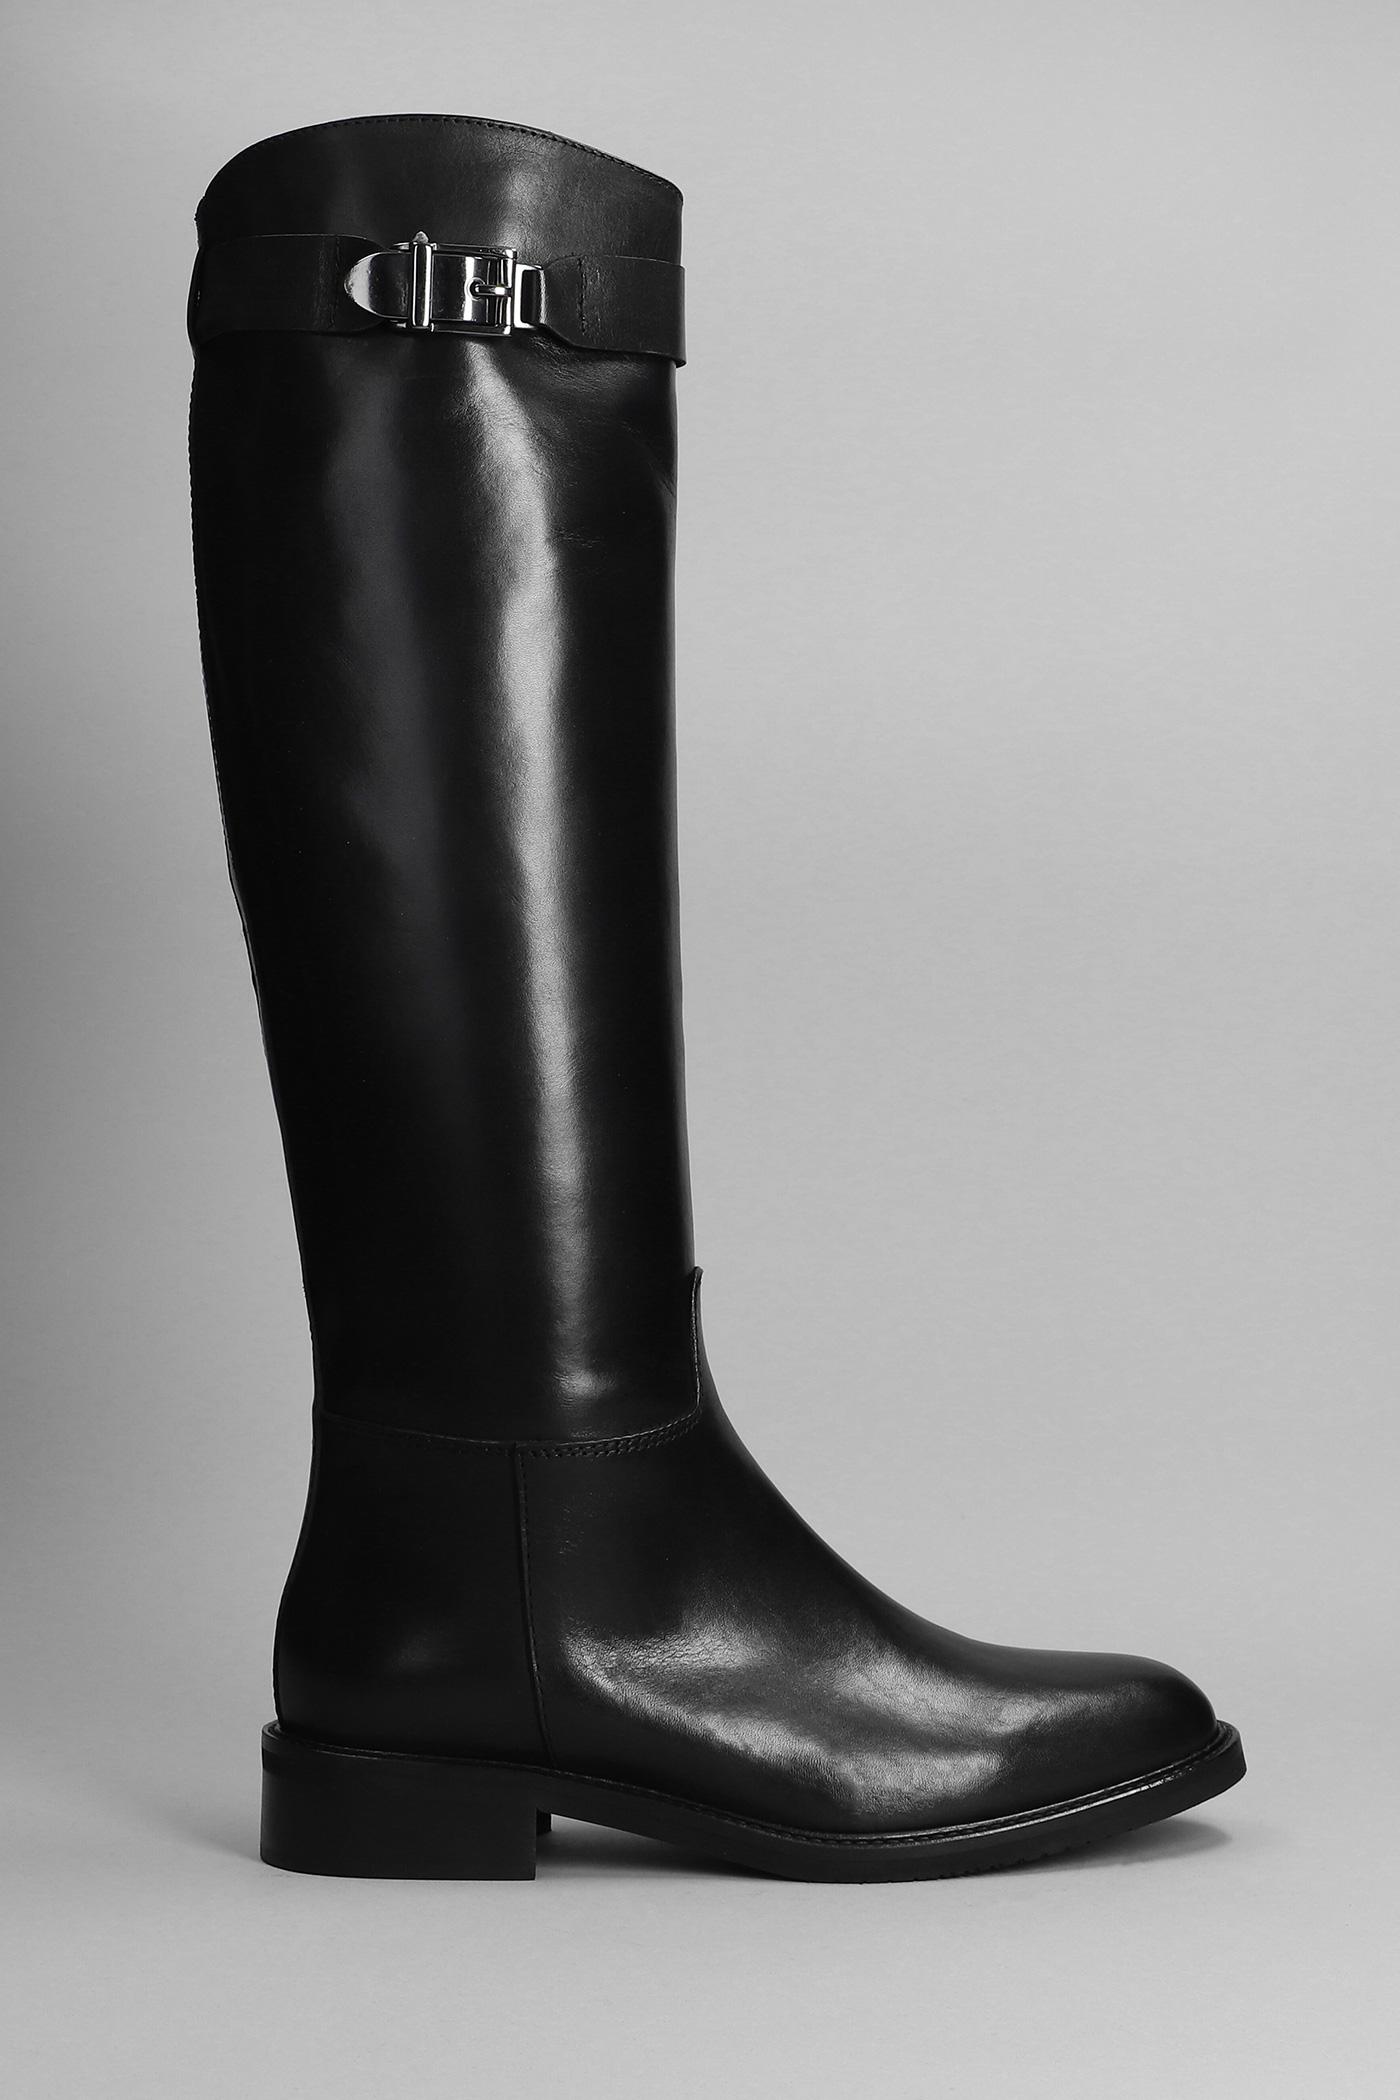 Julie Dee Low Heels Boots In Black Leather | Lyst